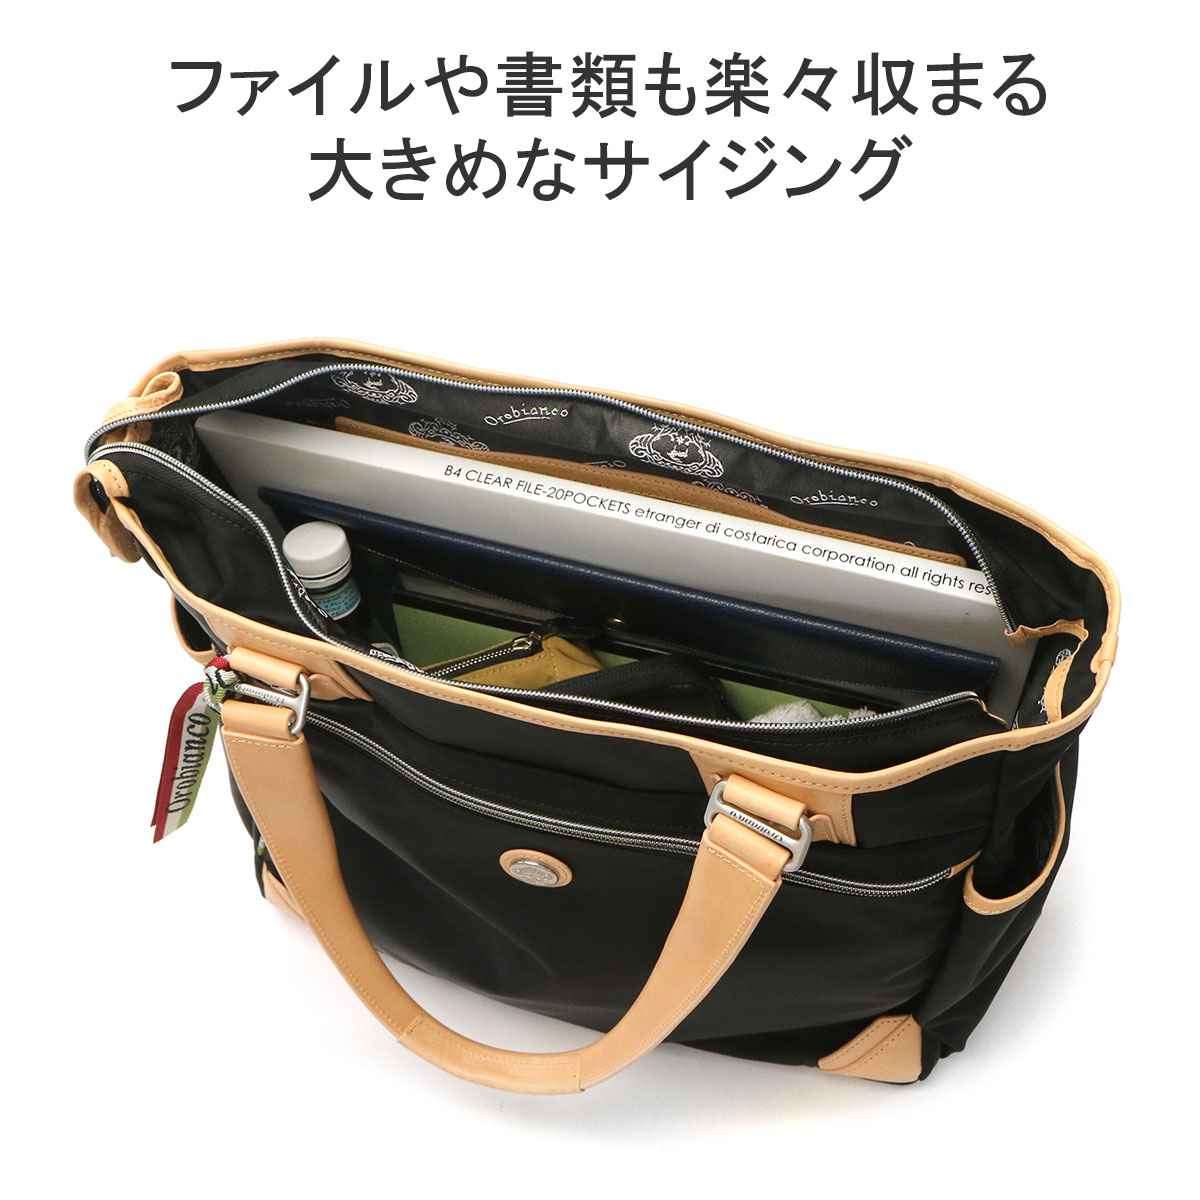 セール30%OFF 日本正規品 オロビアンコ トートバッグ メンズ